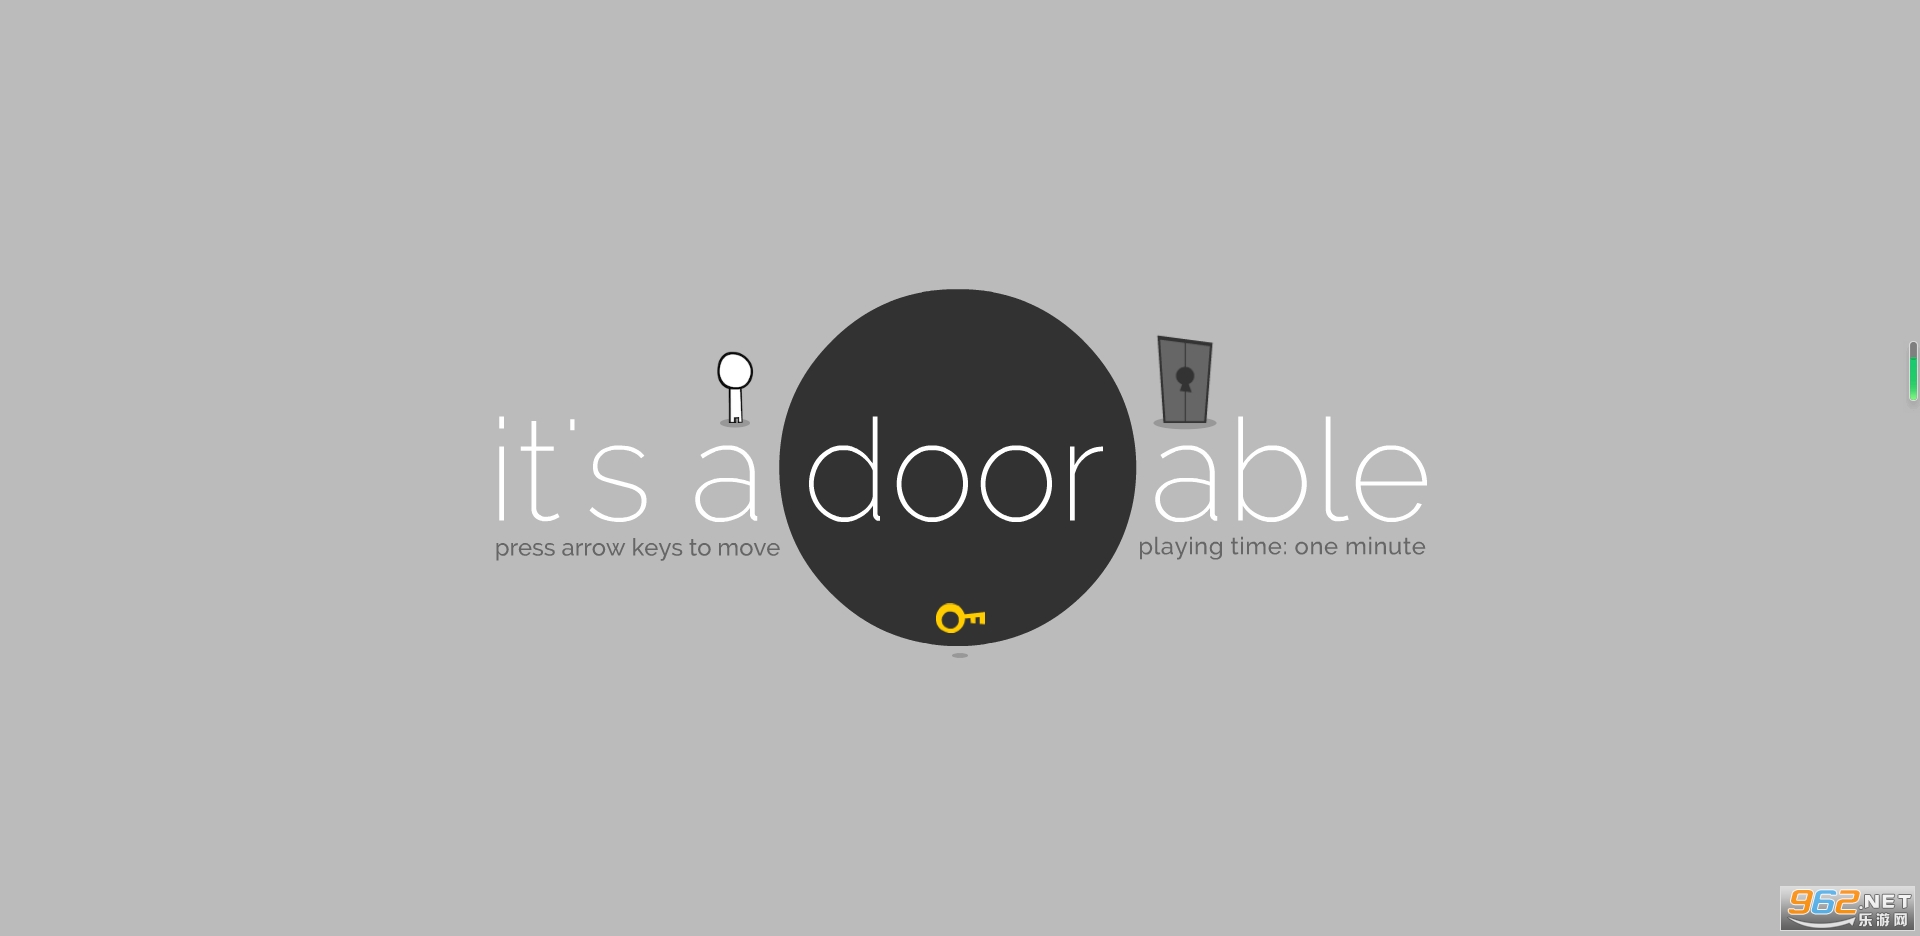 һ(it's a door able)